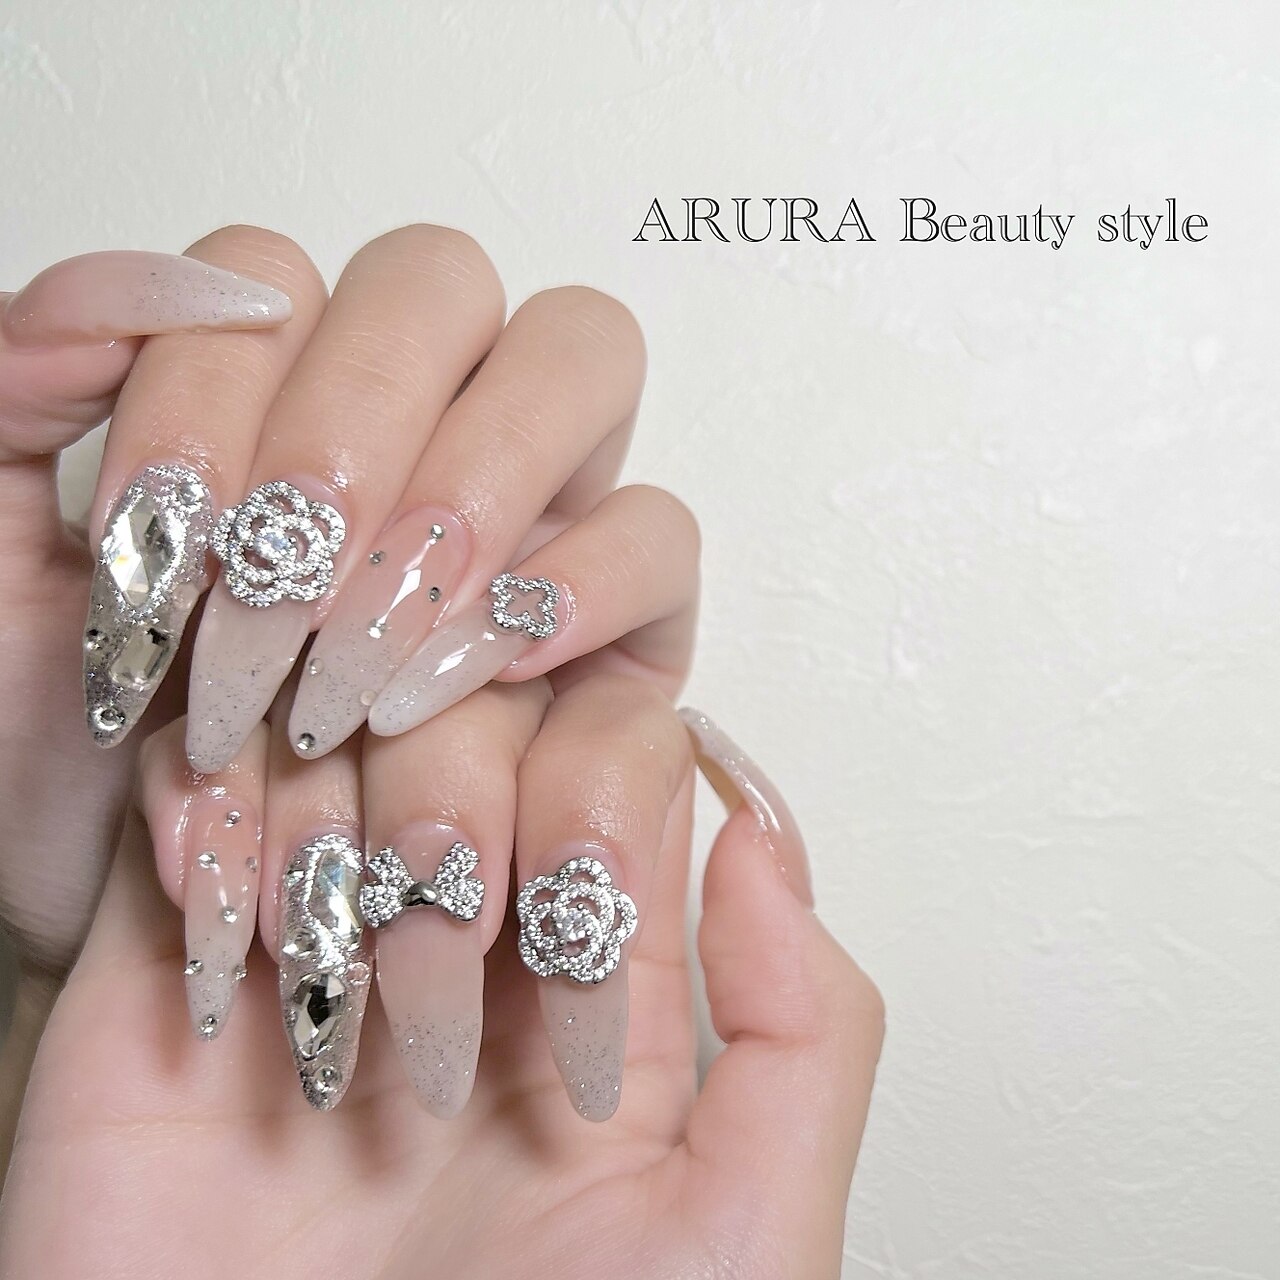 アルラビューティスタイル(ARURA Beauty Style)の紹介画像